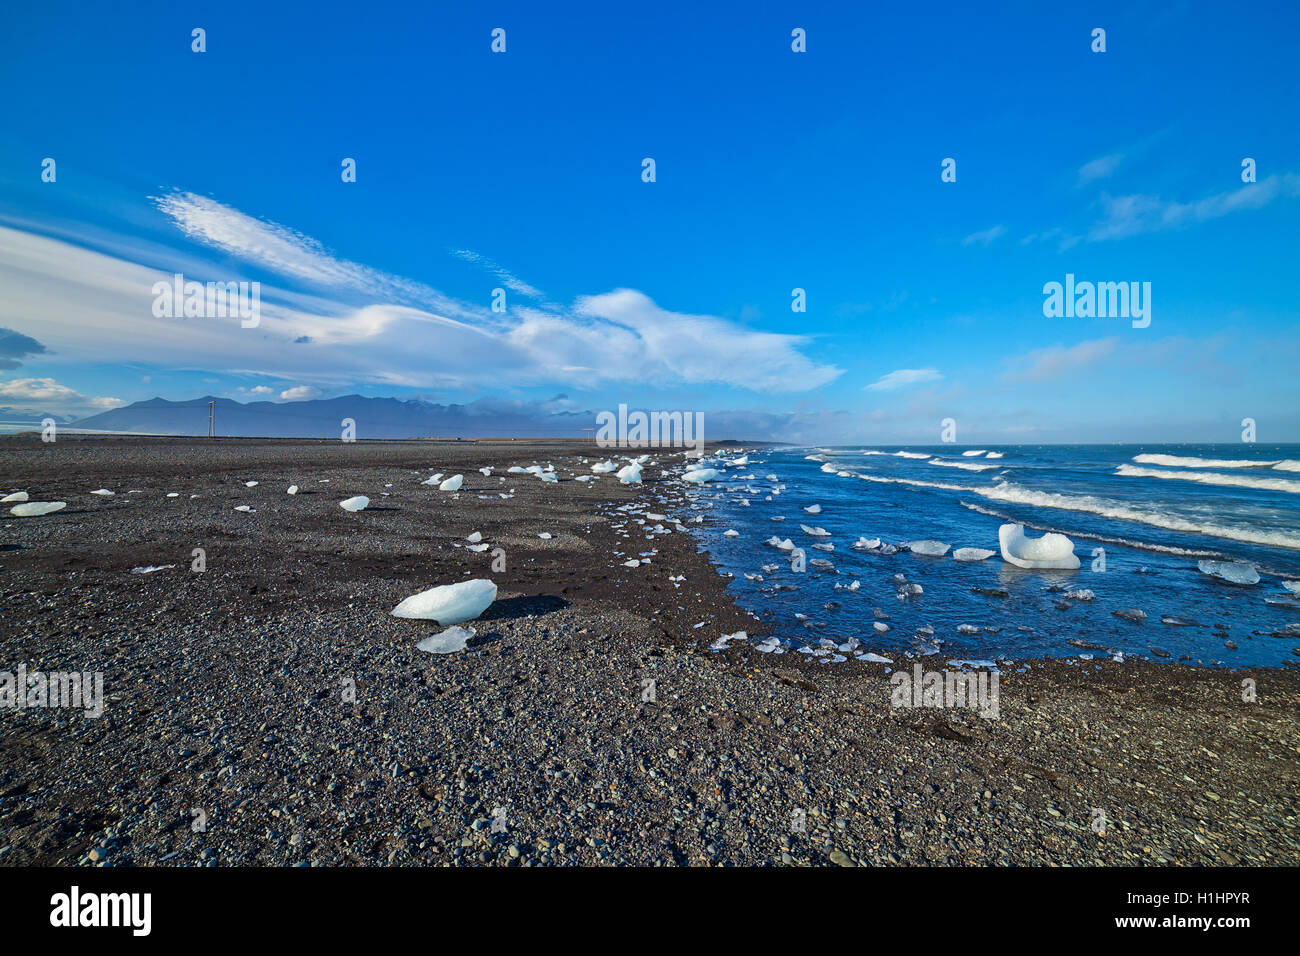 Blocs de glace sur une plage de sable. Banque D'Images